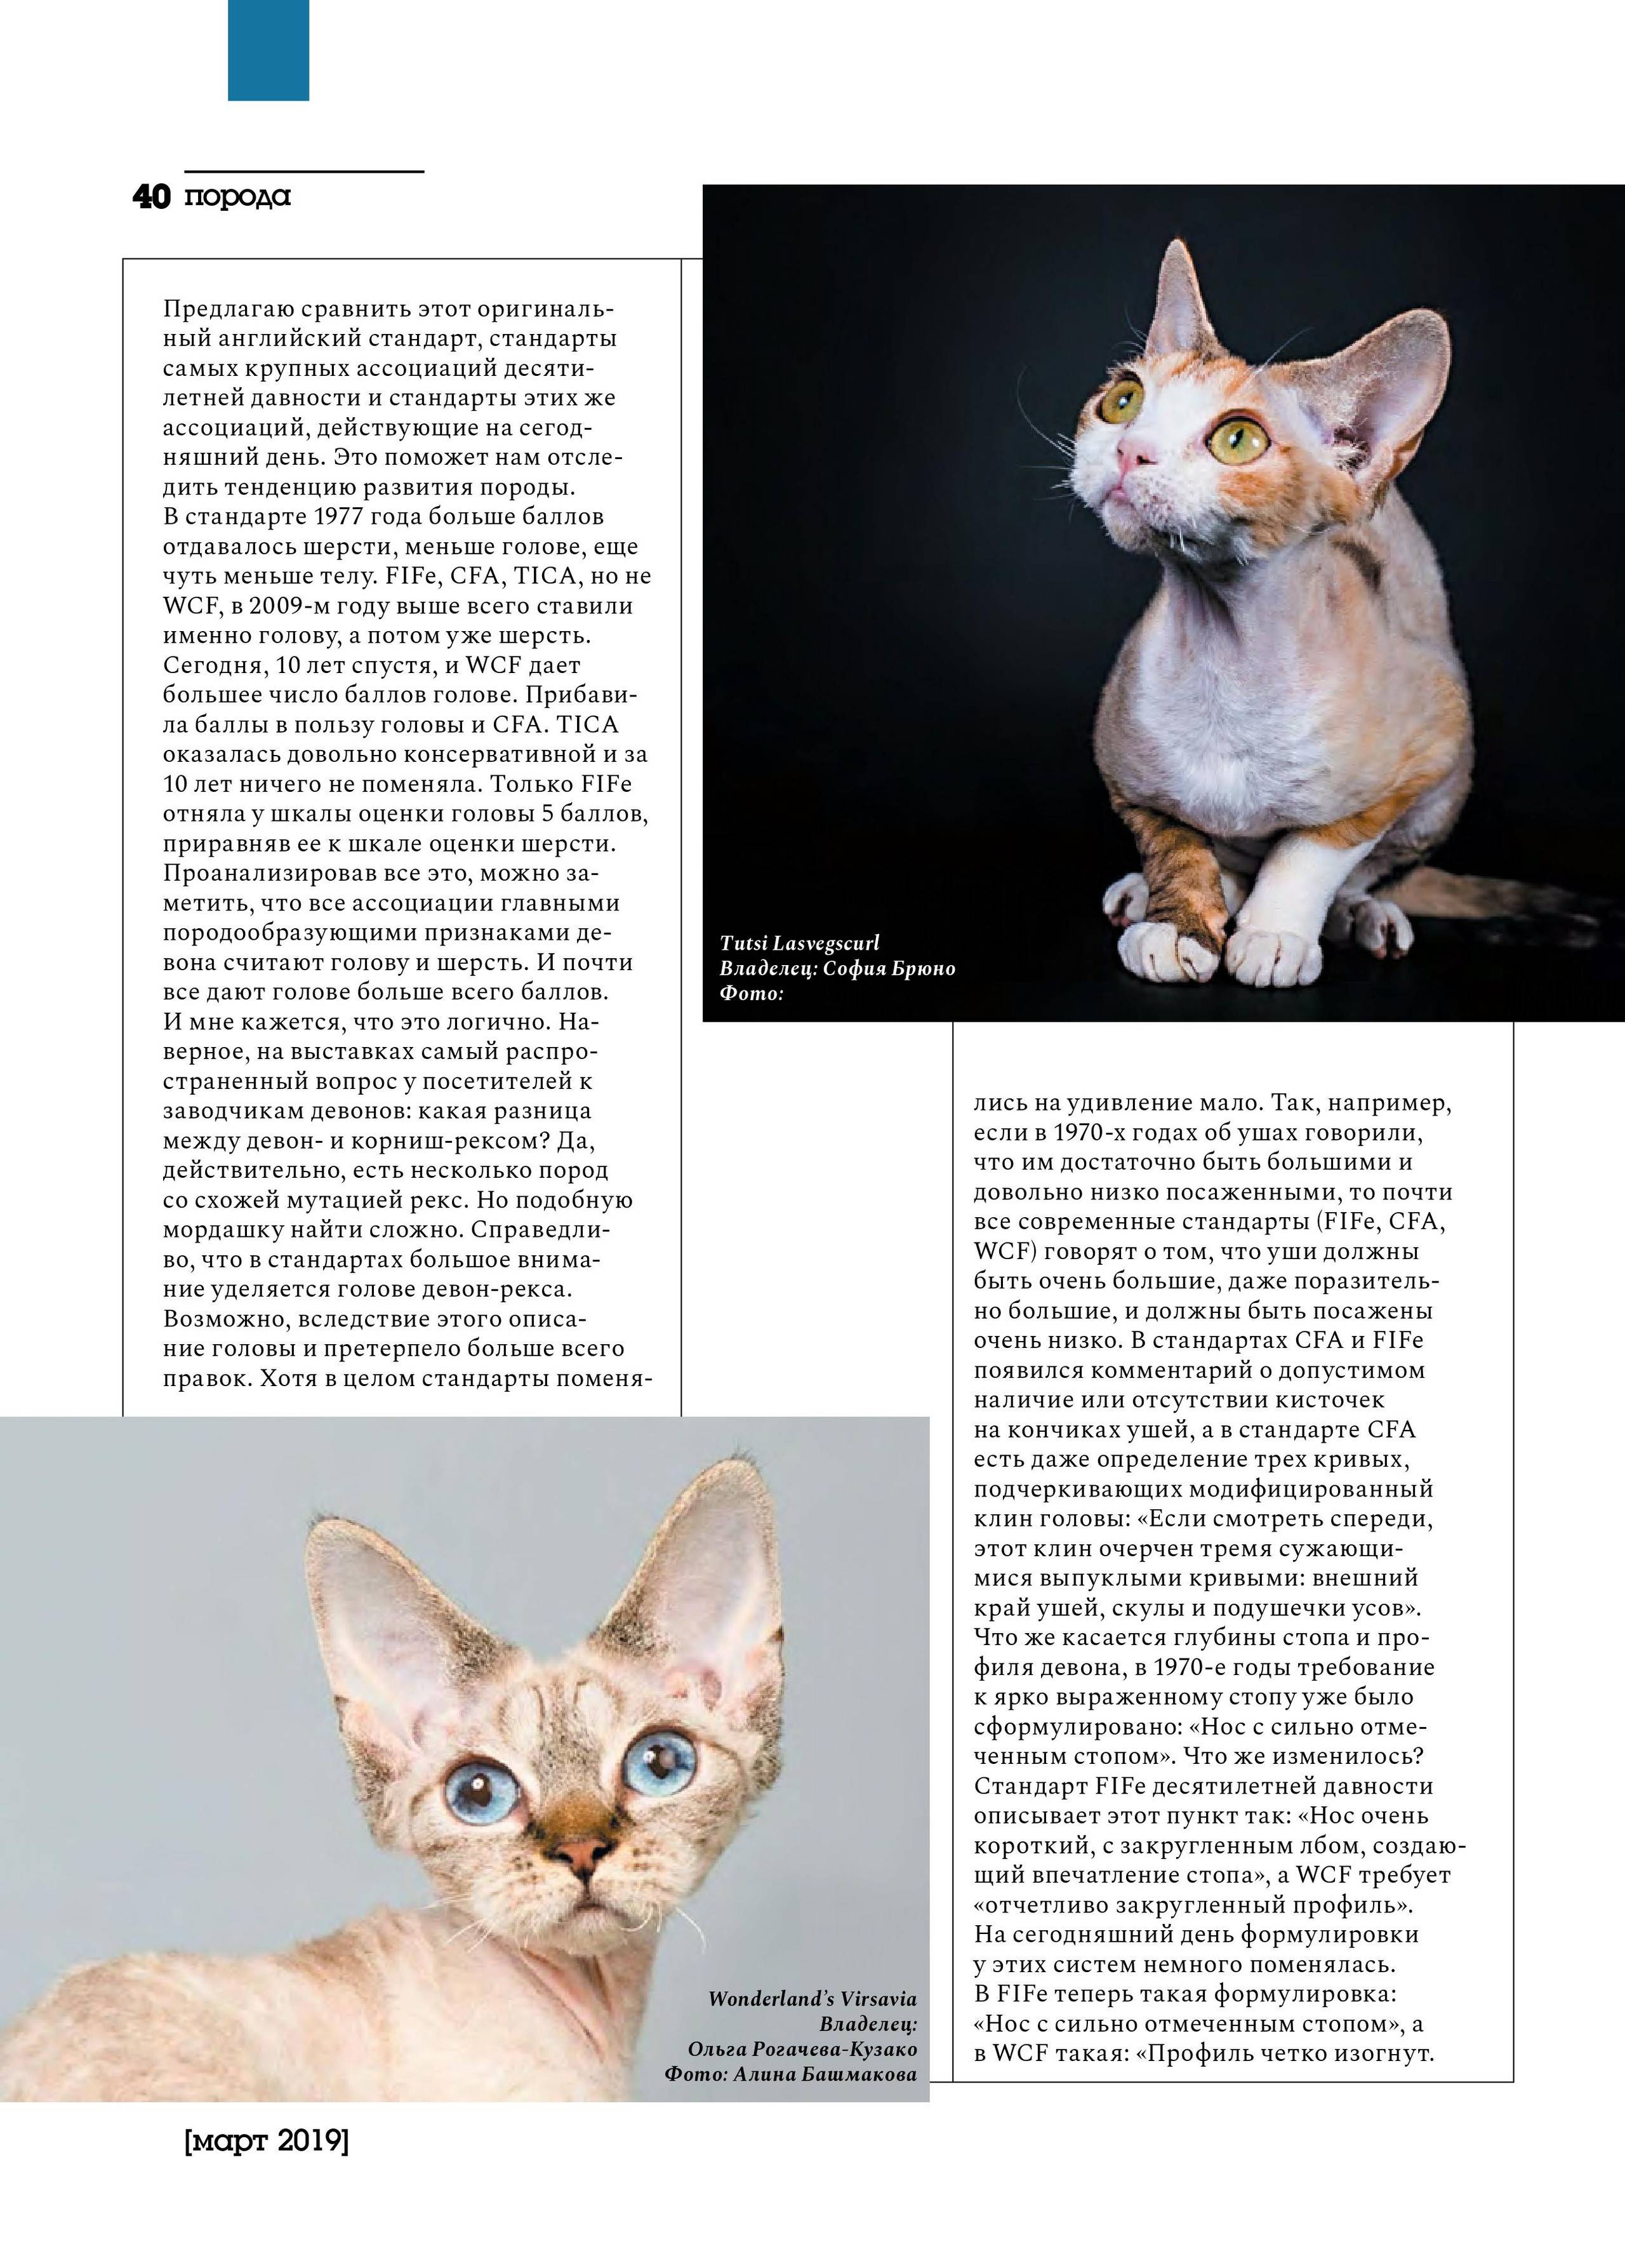 Селкирк-рекс — описание пород котов